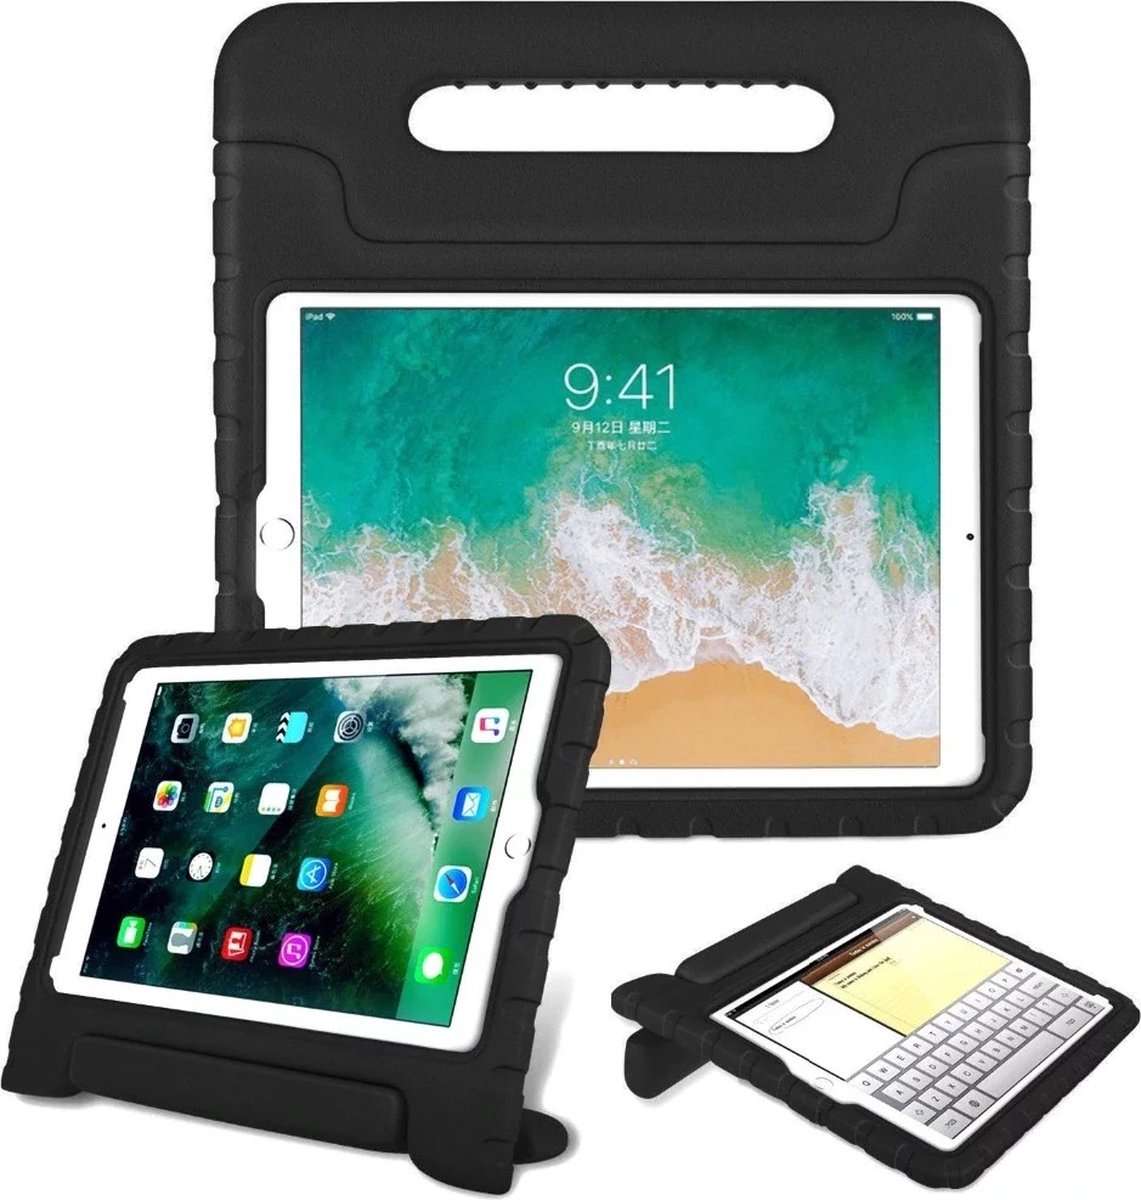 Waeyz Tablet Hoes geschikt voor kinderen extra bescherming Geschikt voor iPad Air 3 2019 model 10.5 inch - Kidsproof Hoes Backcover met handvat - Zwart